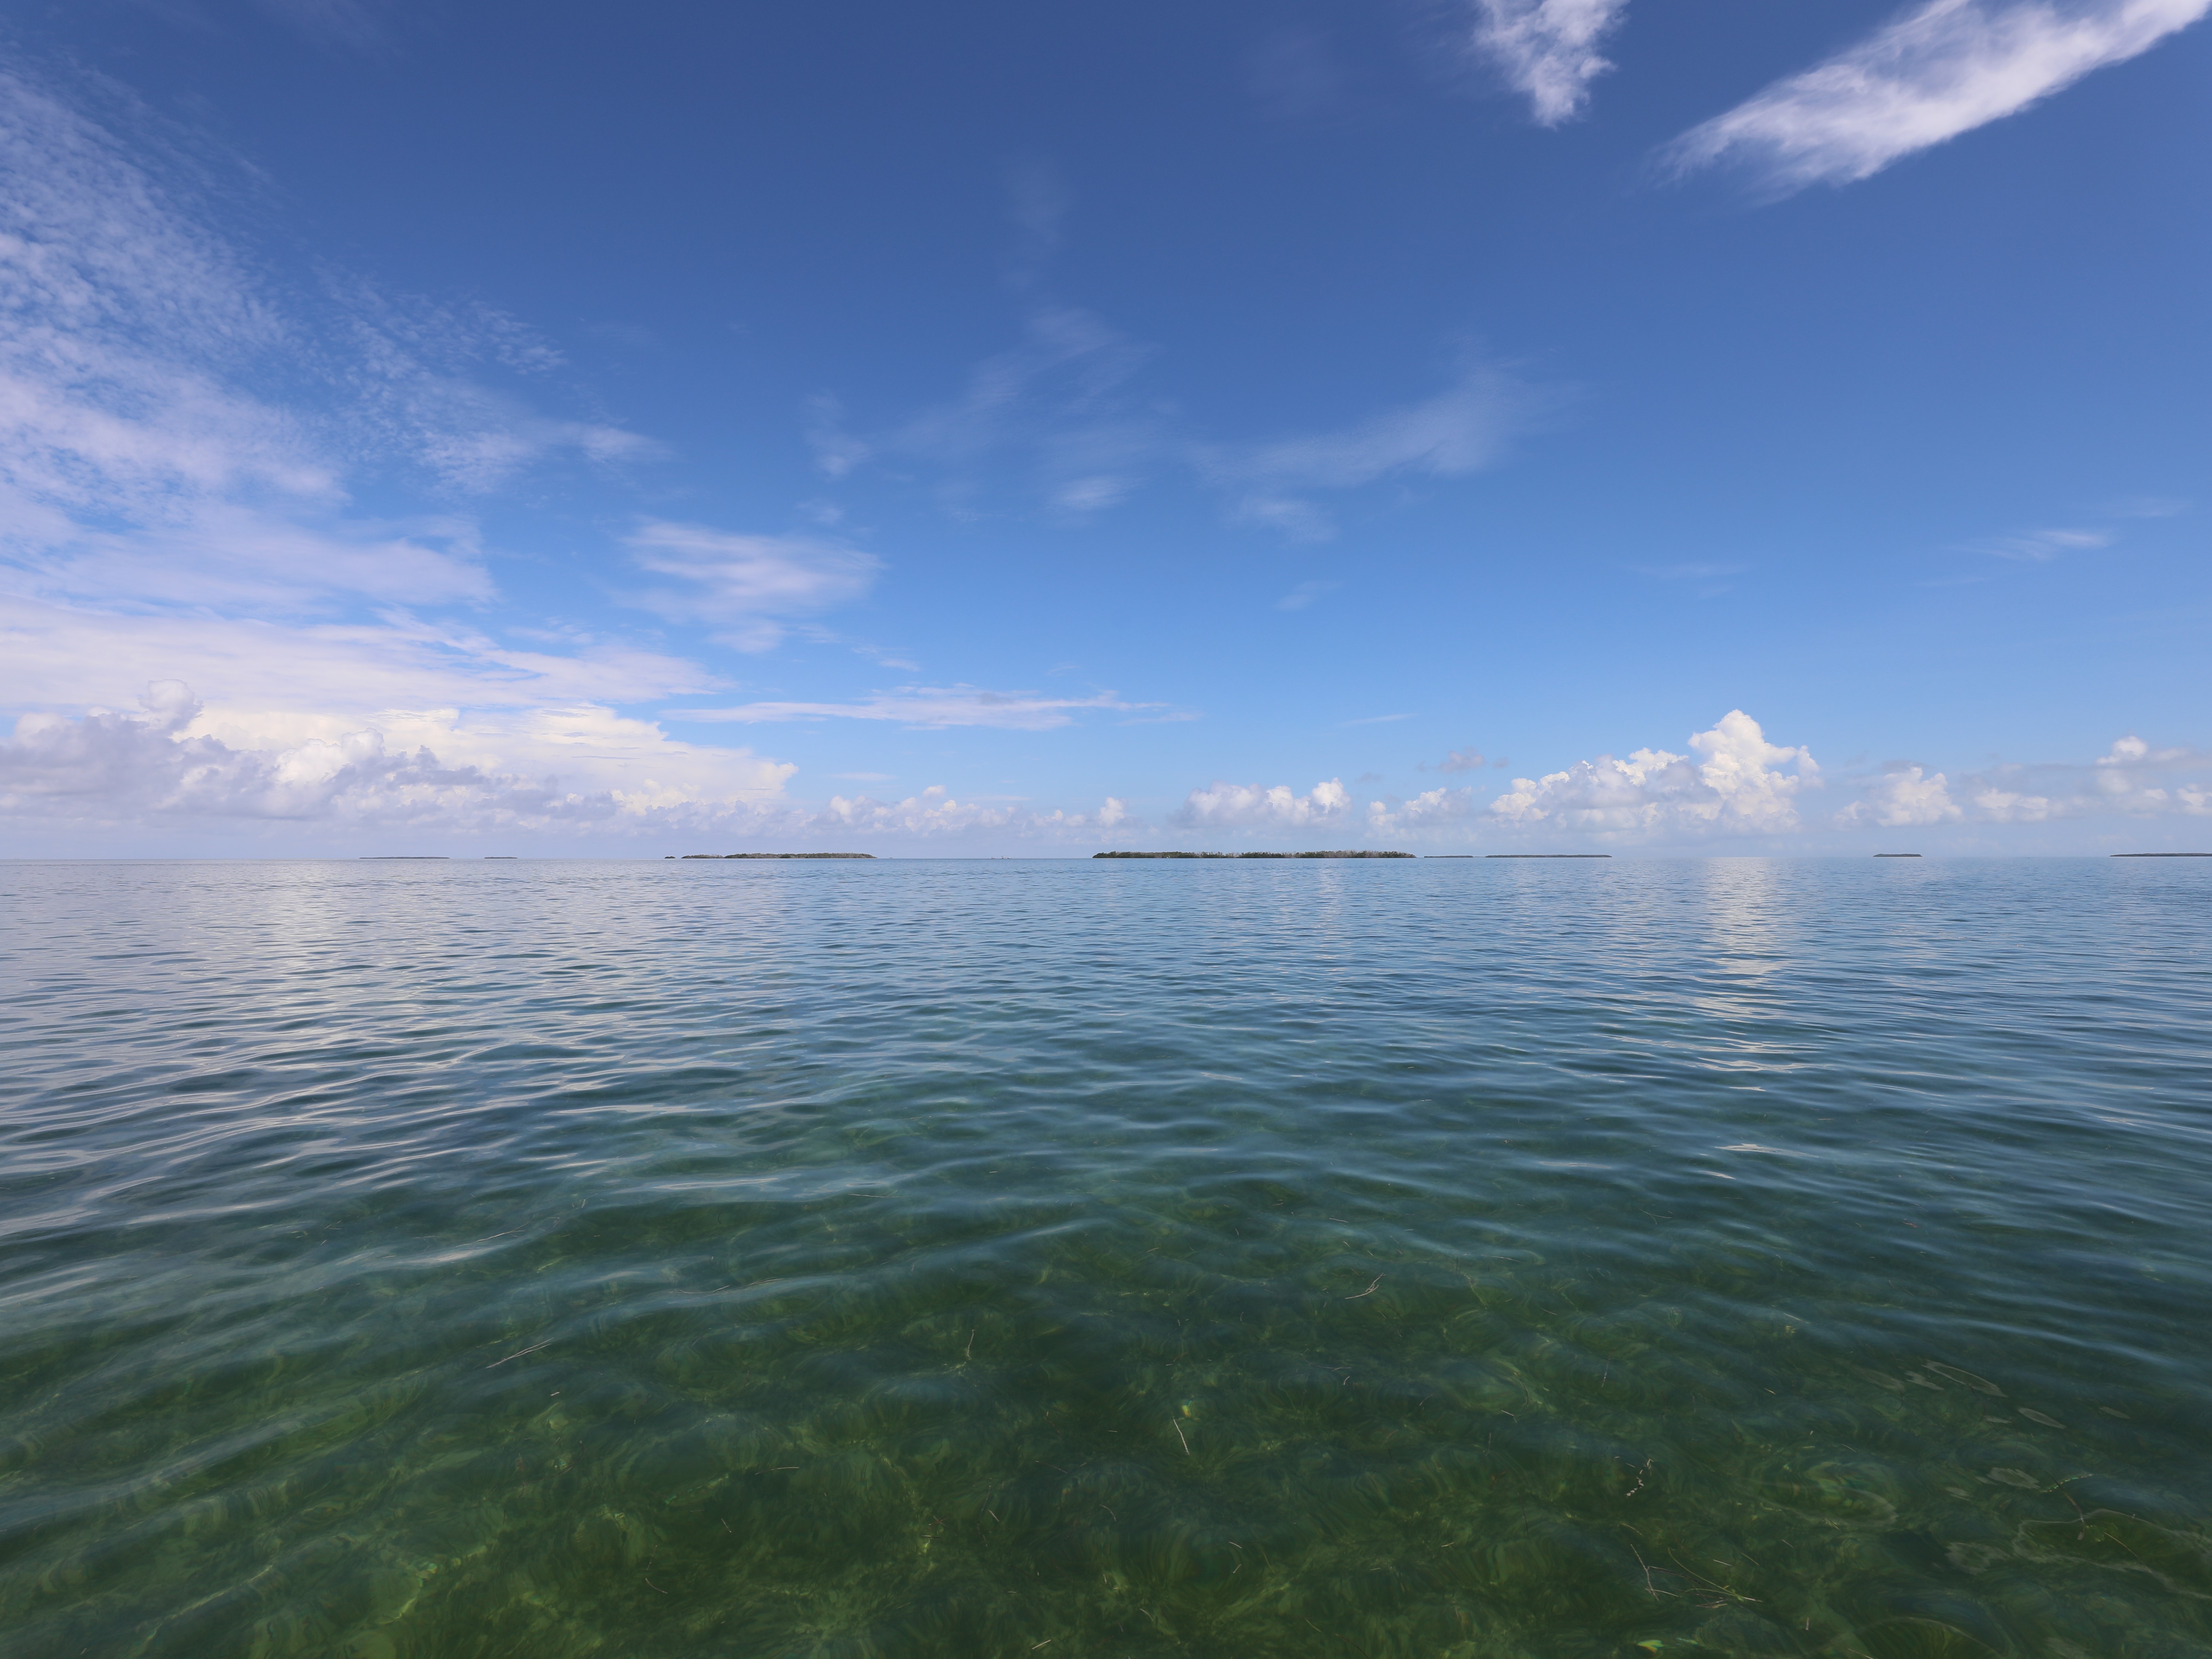 Florida Bay – South Florida Aquatic Environments